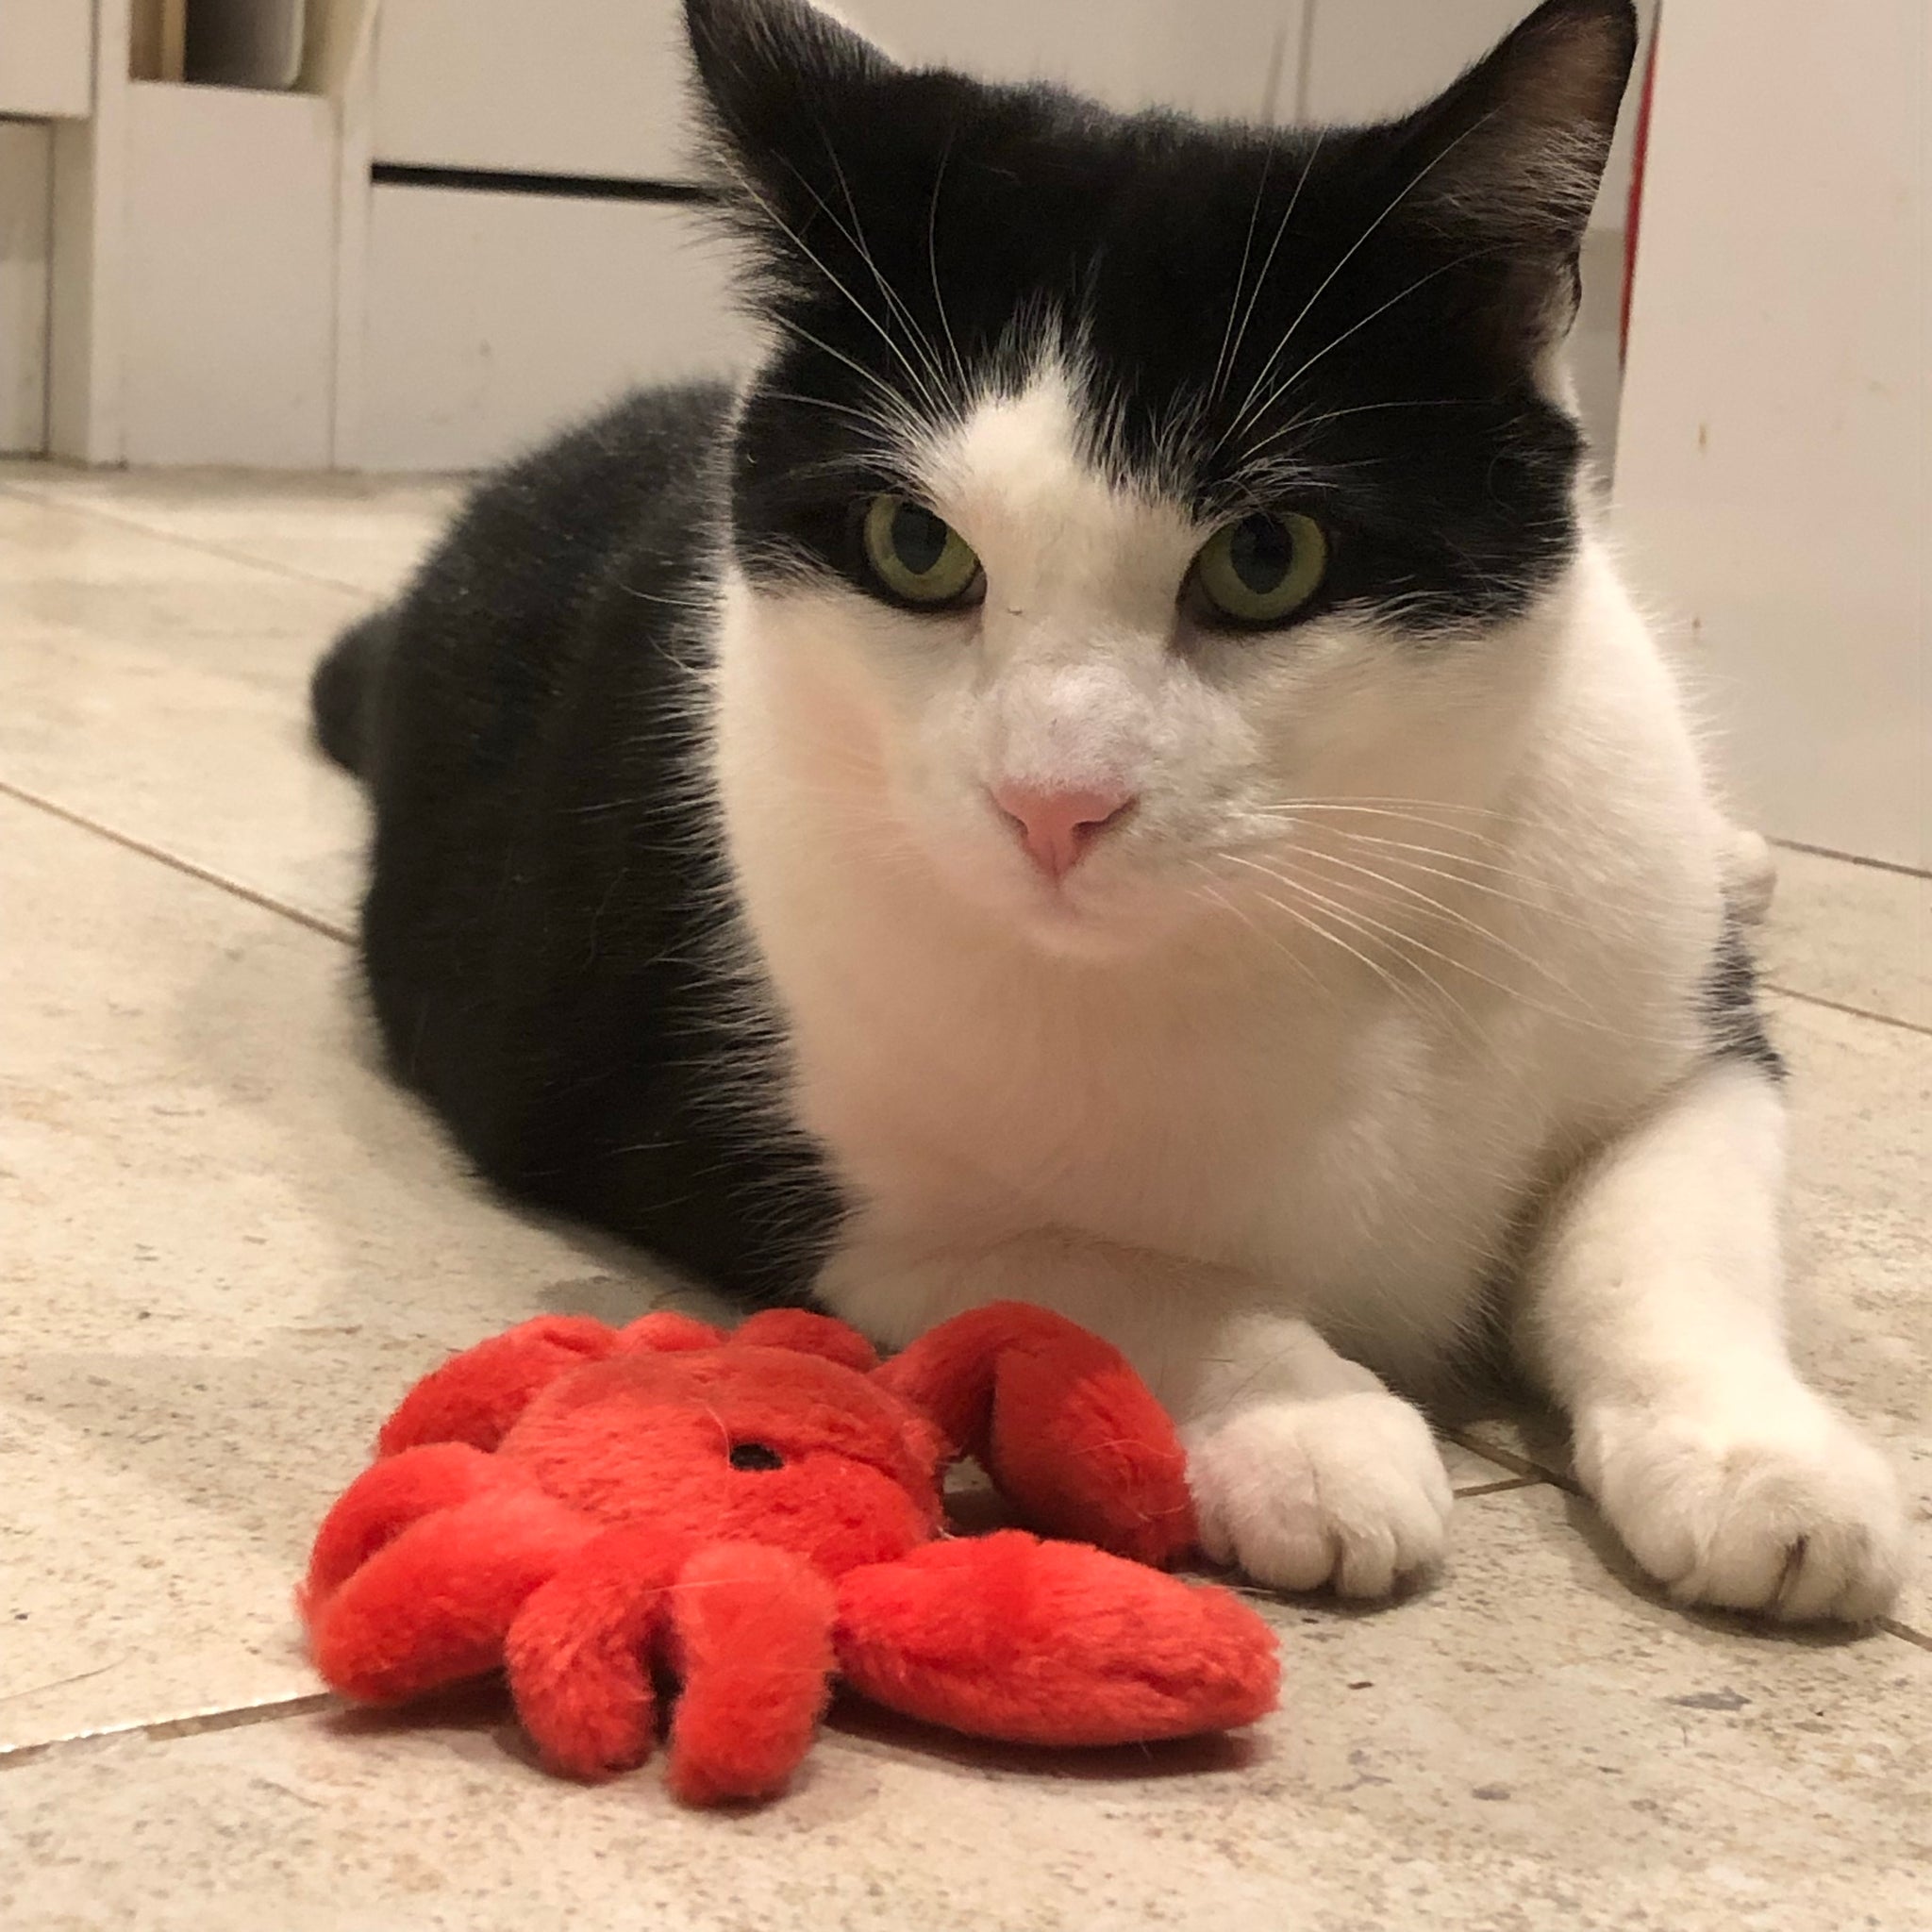 海底蟹猫玩具